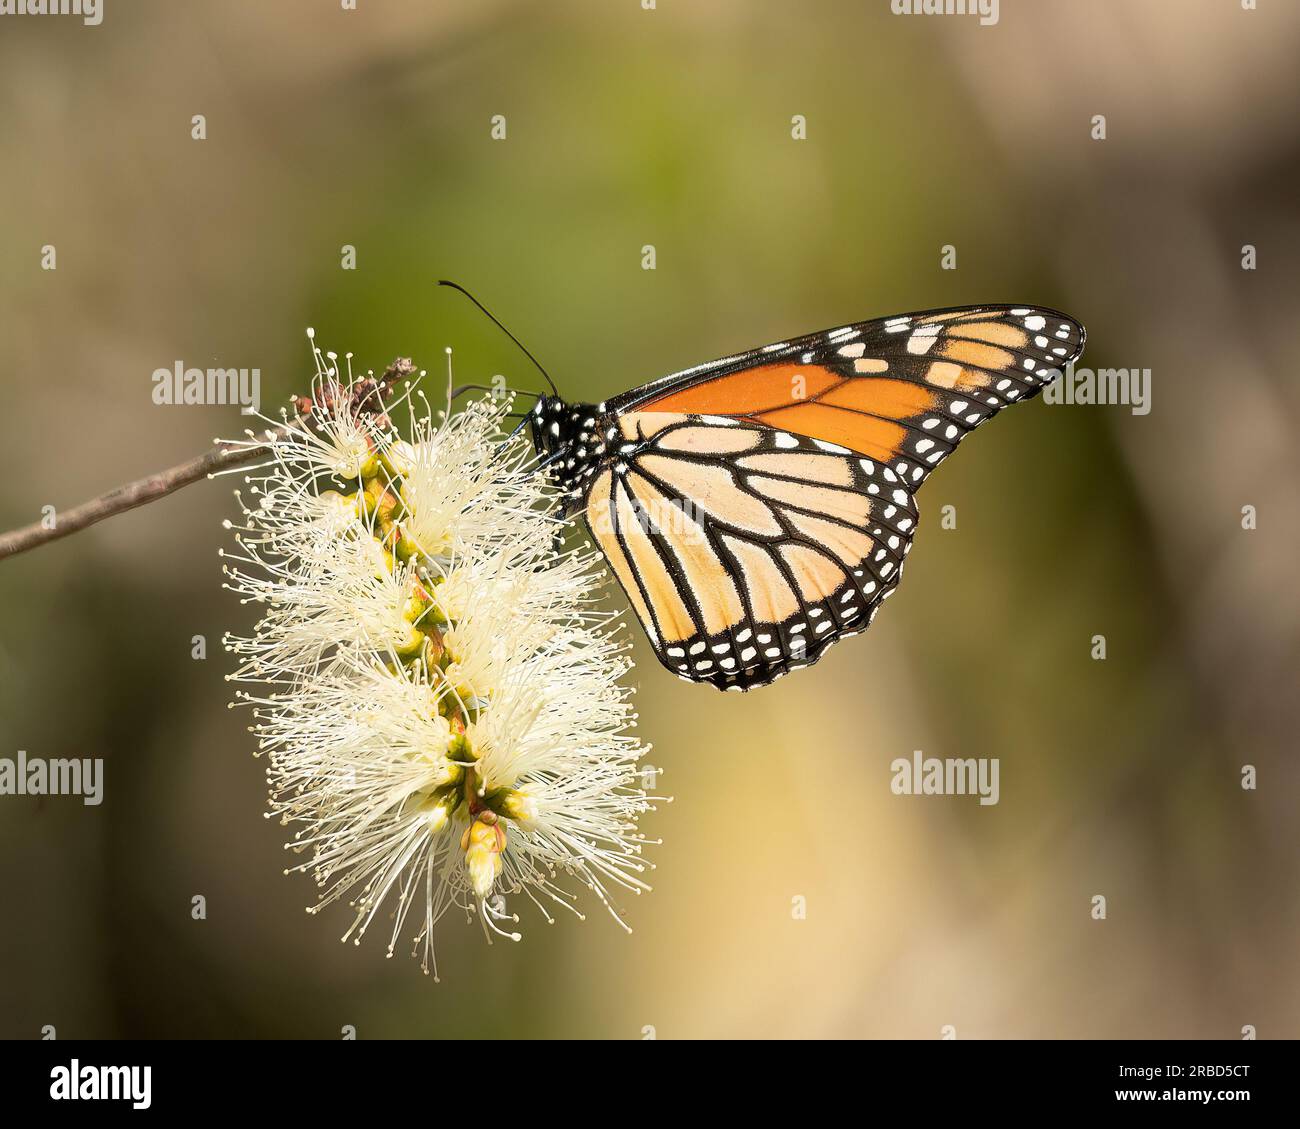 Monarch-Schmetterlinge, die als vom Aussterben bedroht eingestuft werden, Klimawandel, Dürre und Verlust von Lebensräumen sind einige der Schlüsselfaktoren, die zu der starken Krise beigetragen haben Stockfoto